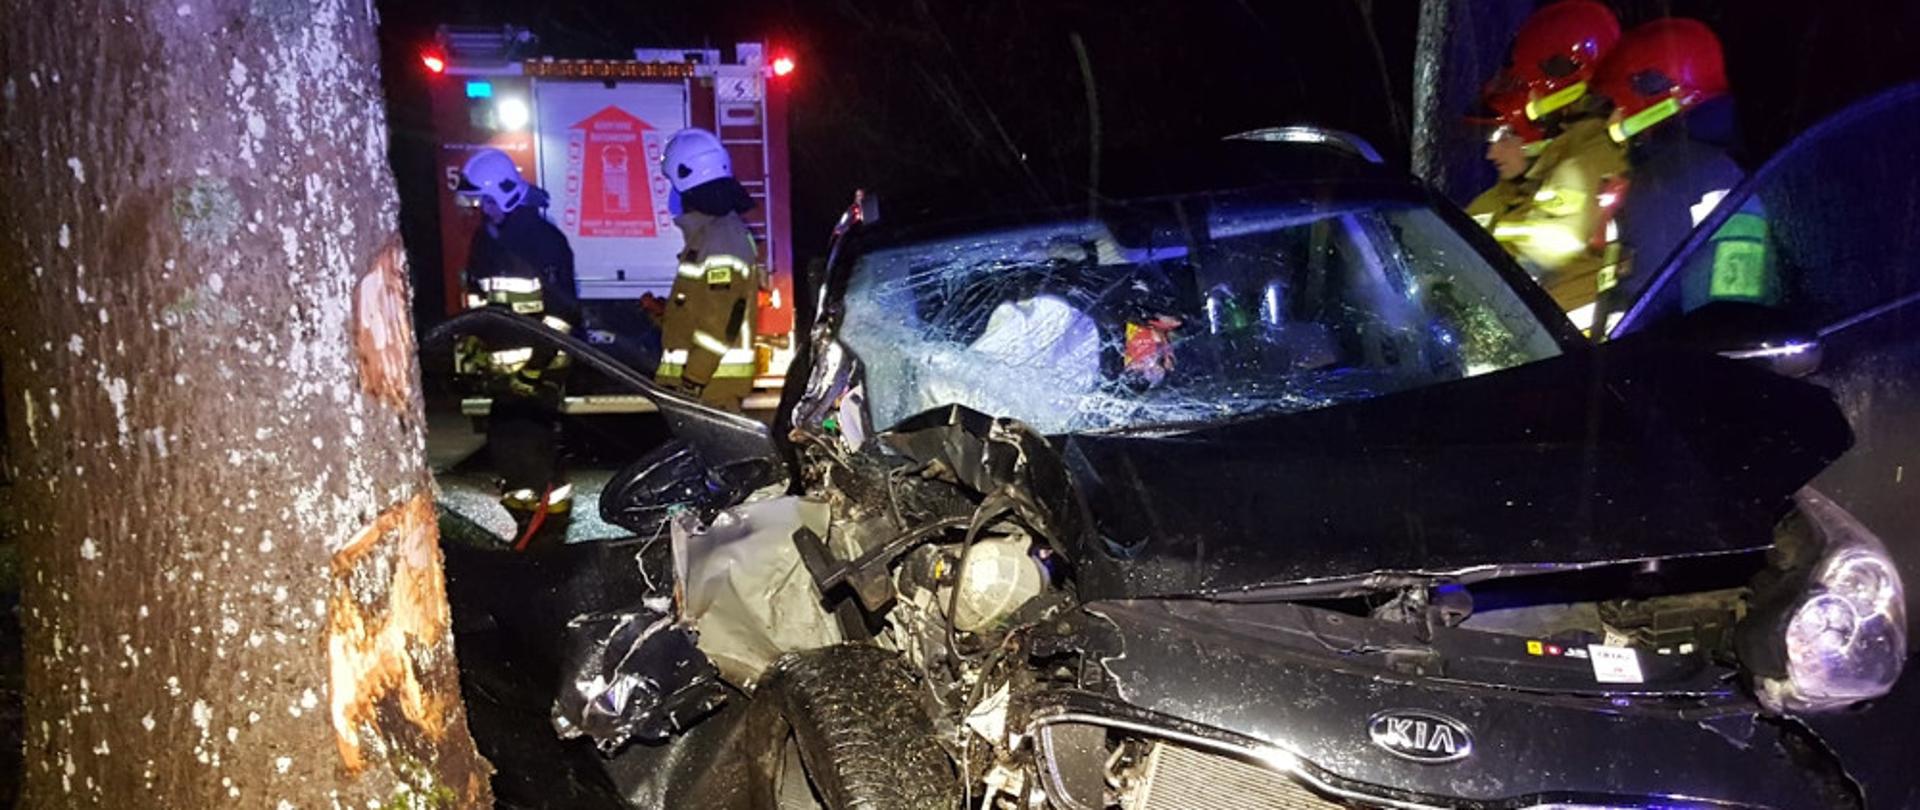 Wypadek samochodu osobowego na drodze wojewódzkiej nr 172 przy miejscowości Łęknica - pojazd osobowy marki KIA, koloru czarnego uderzył w drzewo, rozbity stoi częściowo na jednym pasie drogi oraz na poboczu.